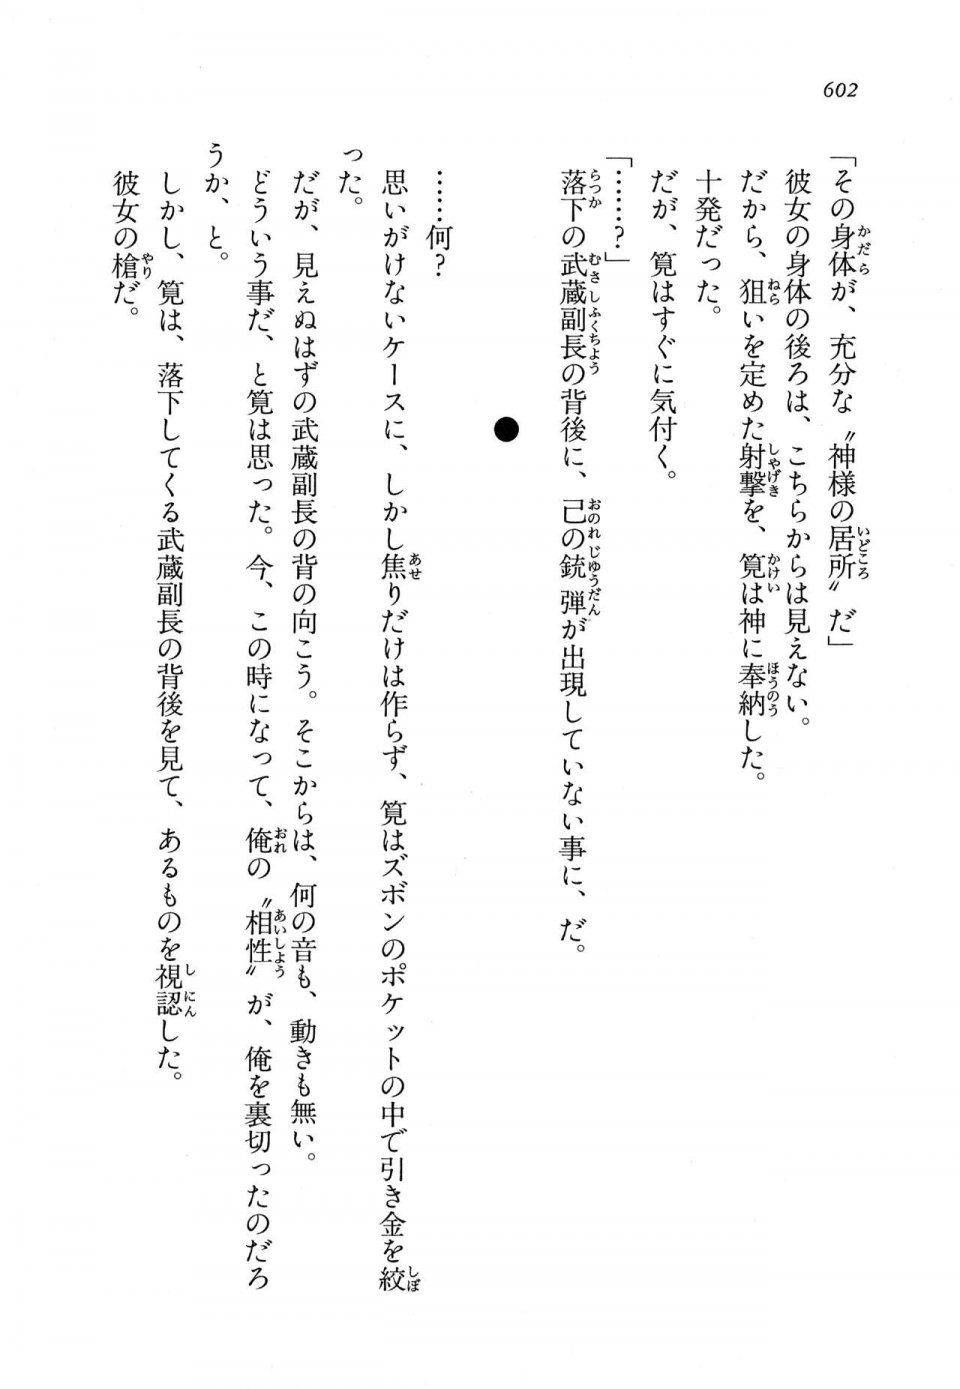 Kyoukai Senjou no Horizon LN Vol 11(5A) - Photo #602